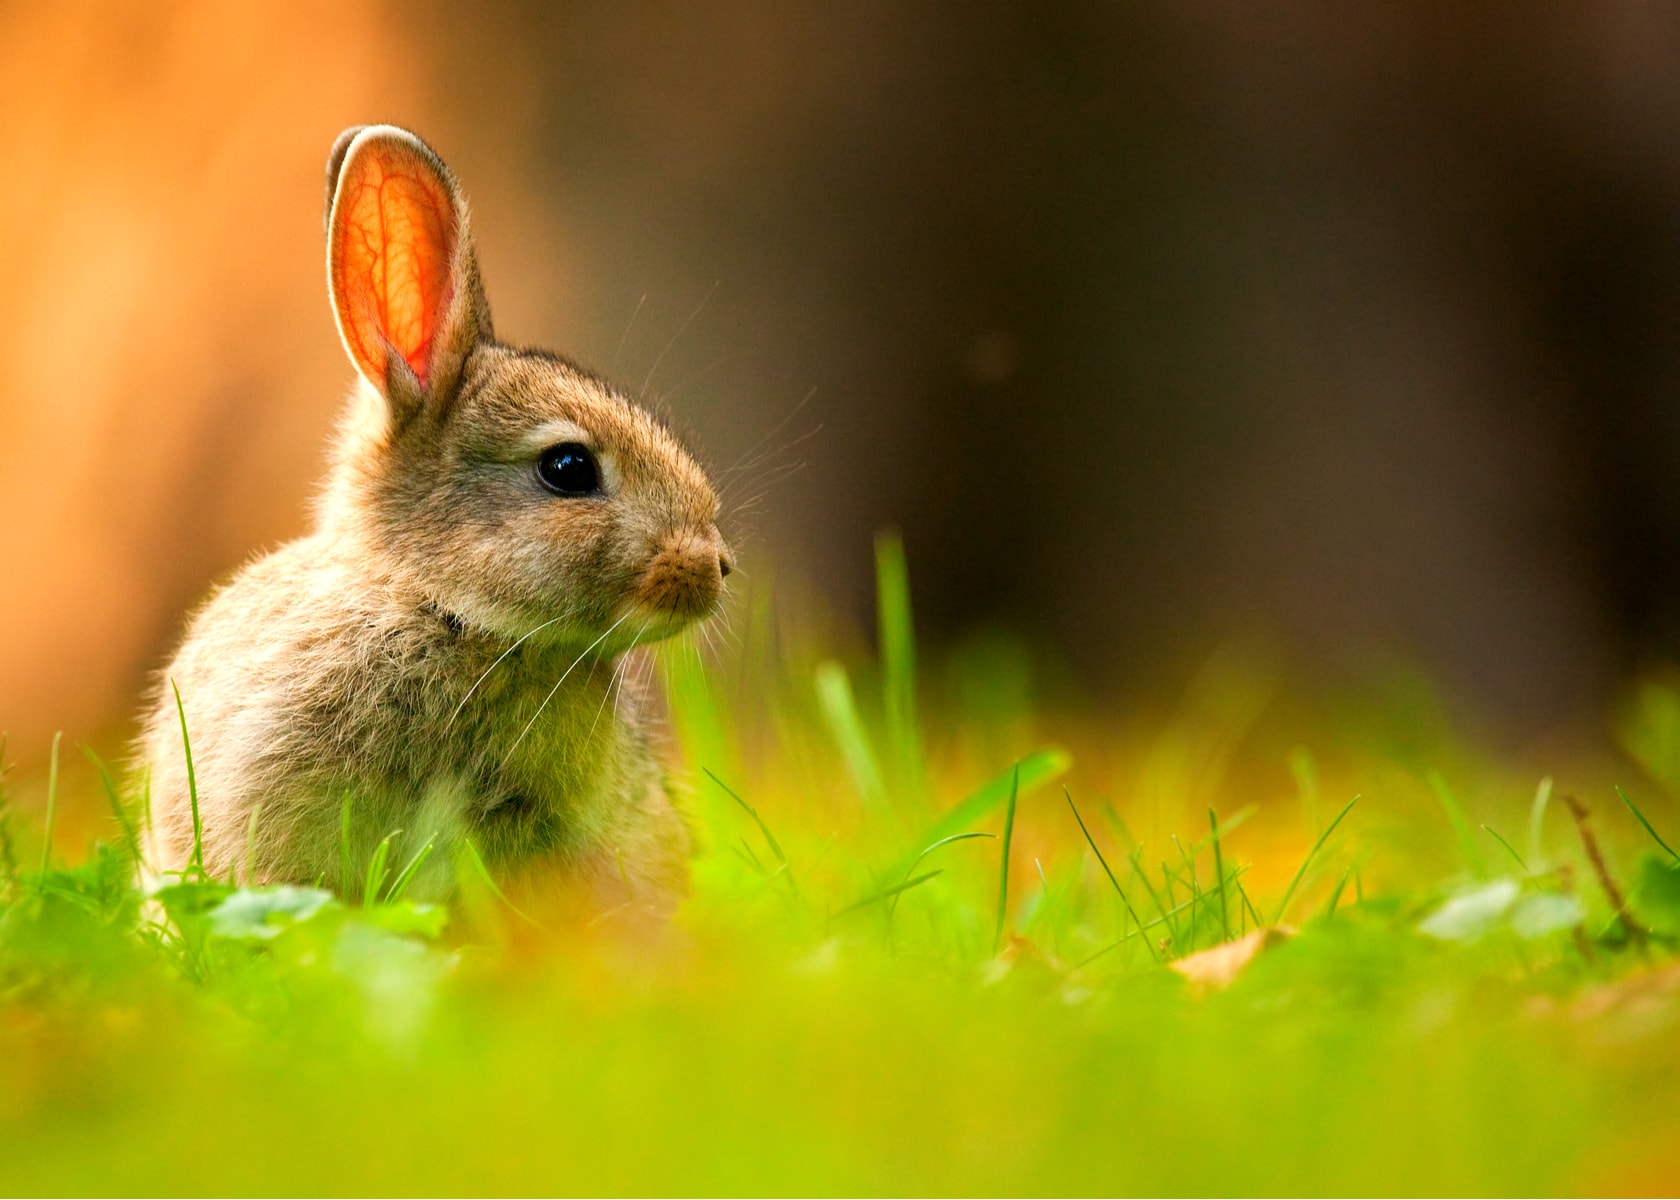 Avbildet: Kanin i naturen